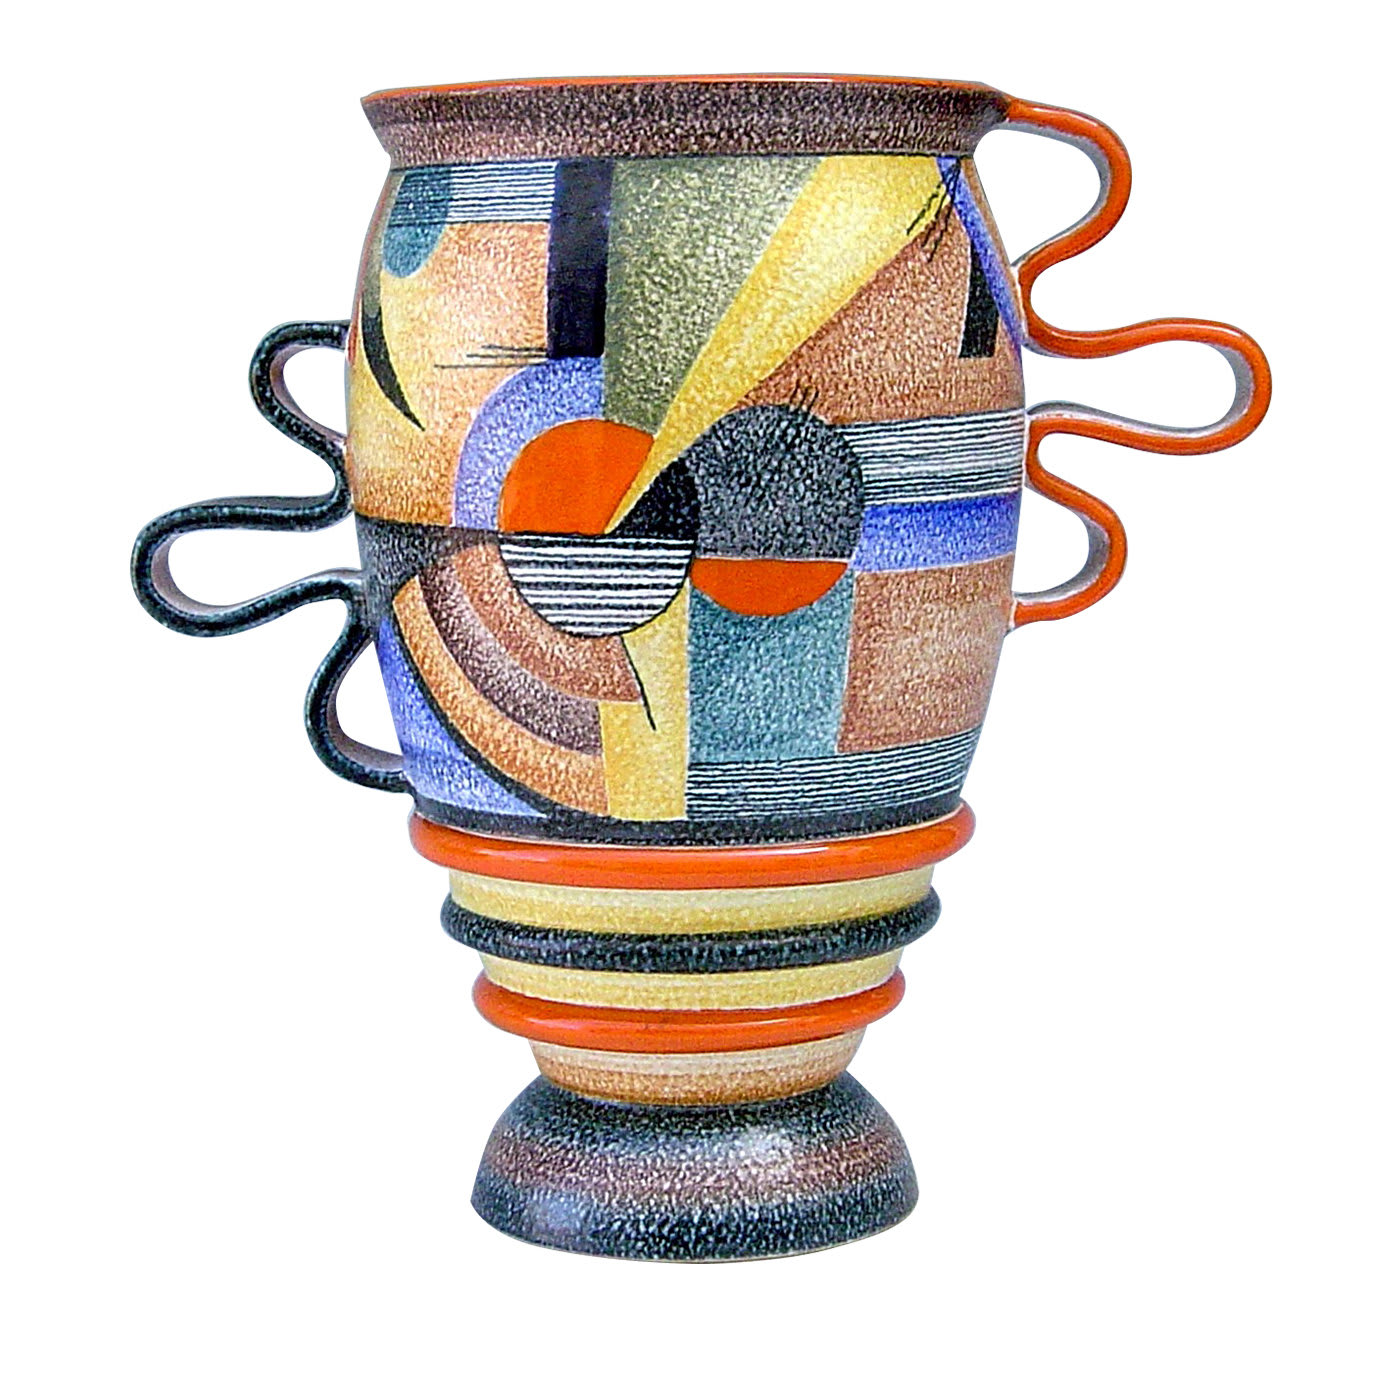 Futurista 900 Ceramic Vase - Mazzotti 1903